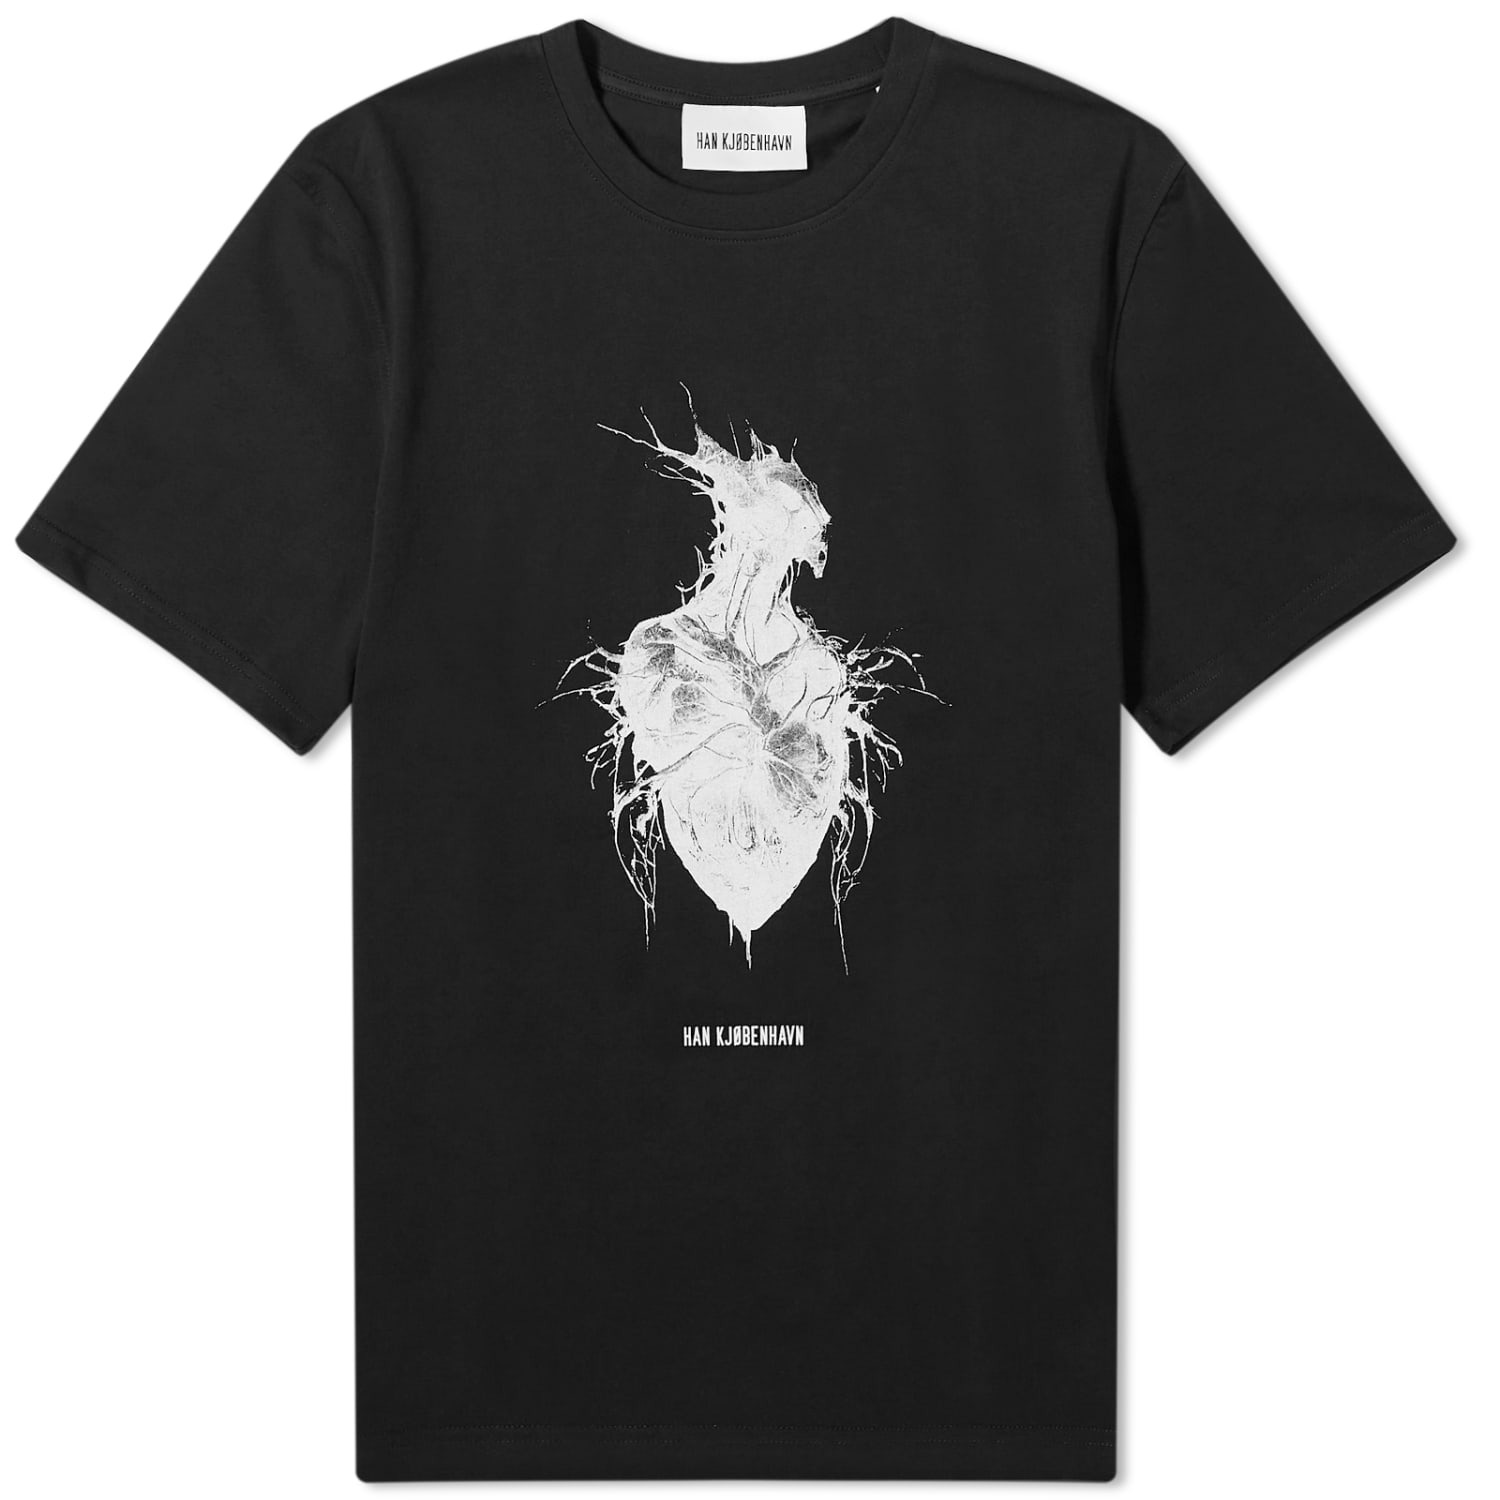 Футболка Han Kjobenhavn Heart Monster Print, черный куртка han kjobenhavn размер s черный